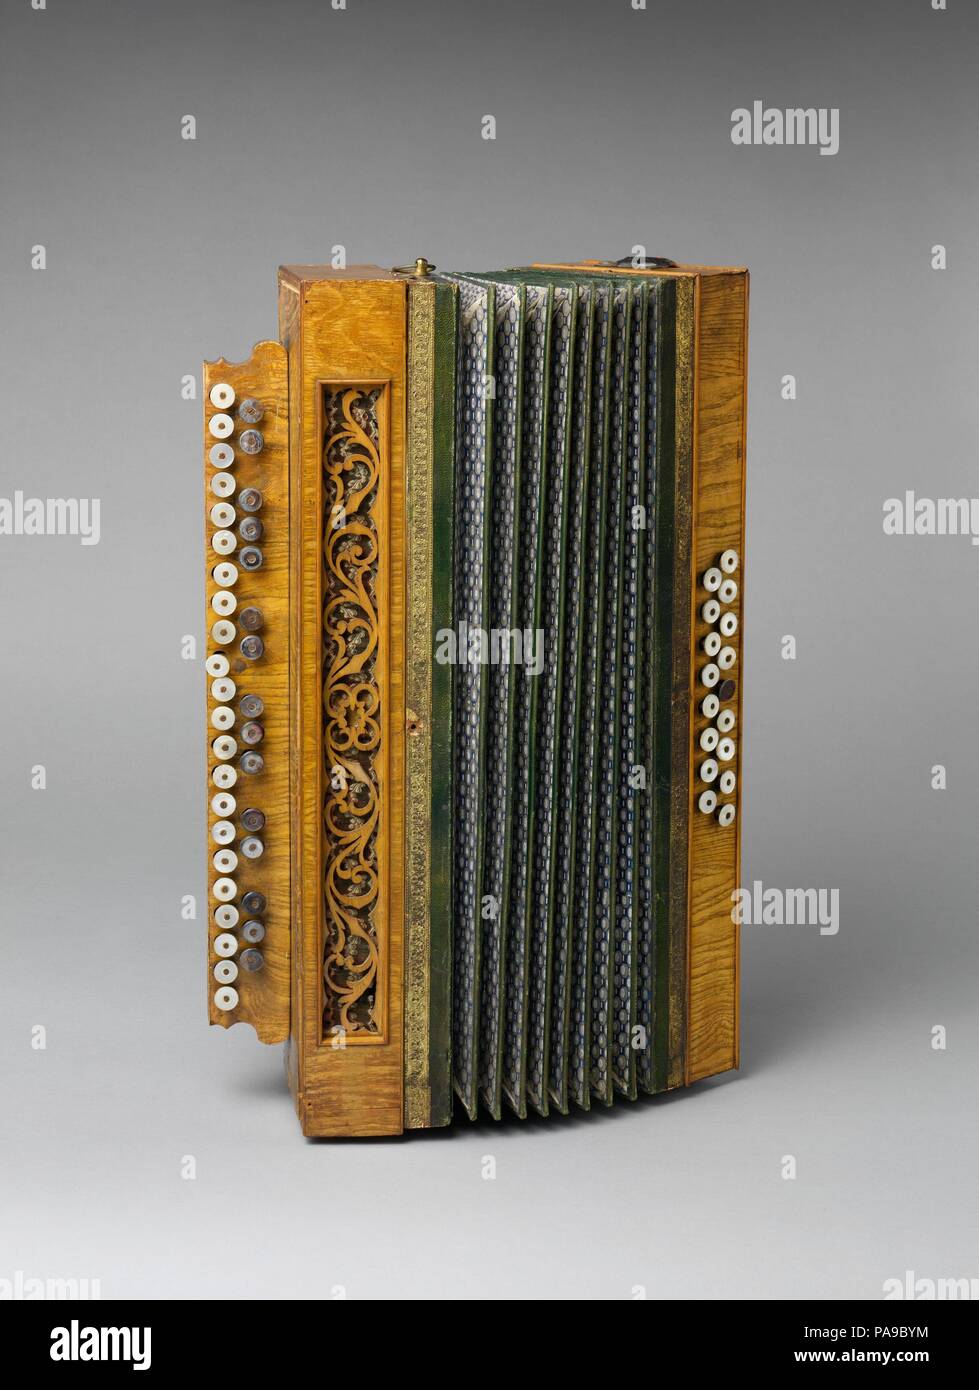 L'accordéon. Culture : Peut-être belge. Dimensions : hors tout : 19,9 x  14,7 x 52,7cm (7 13/16 x 5 13/16 x 20 3/4in.). Date : ca. 1890. Un accordéon  chromatique avec un